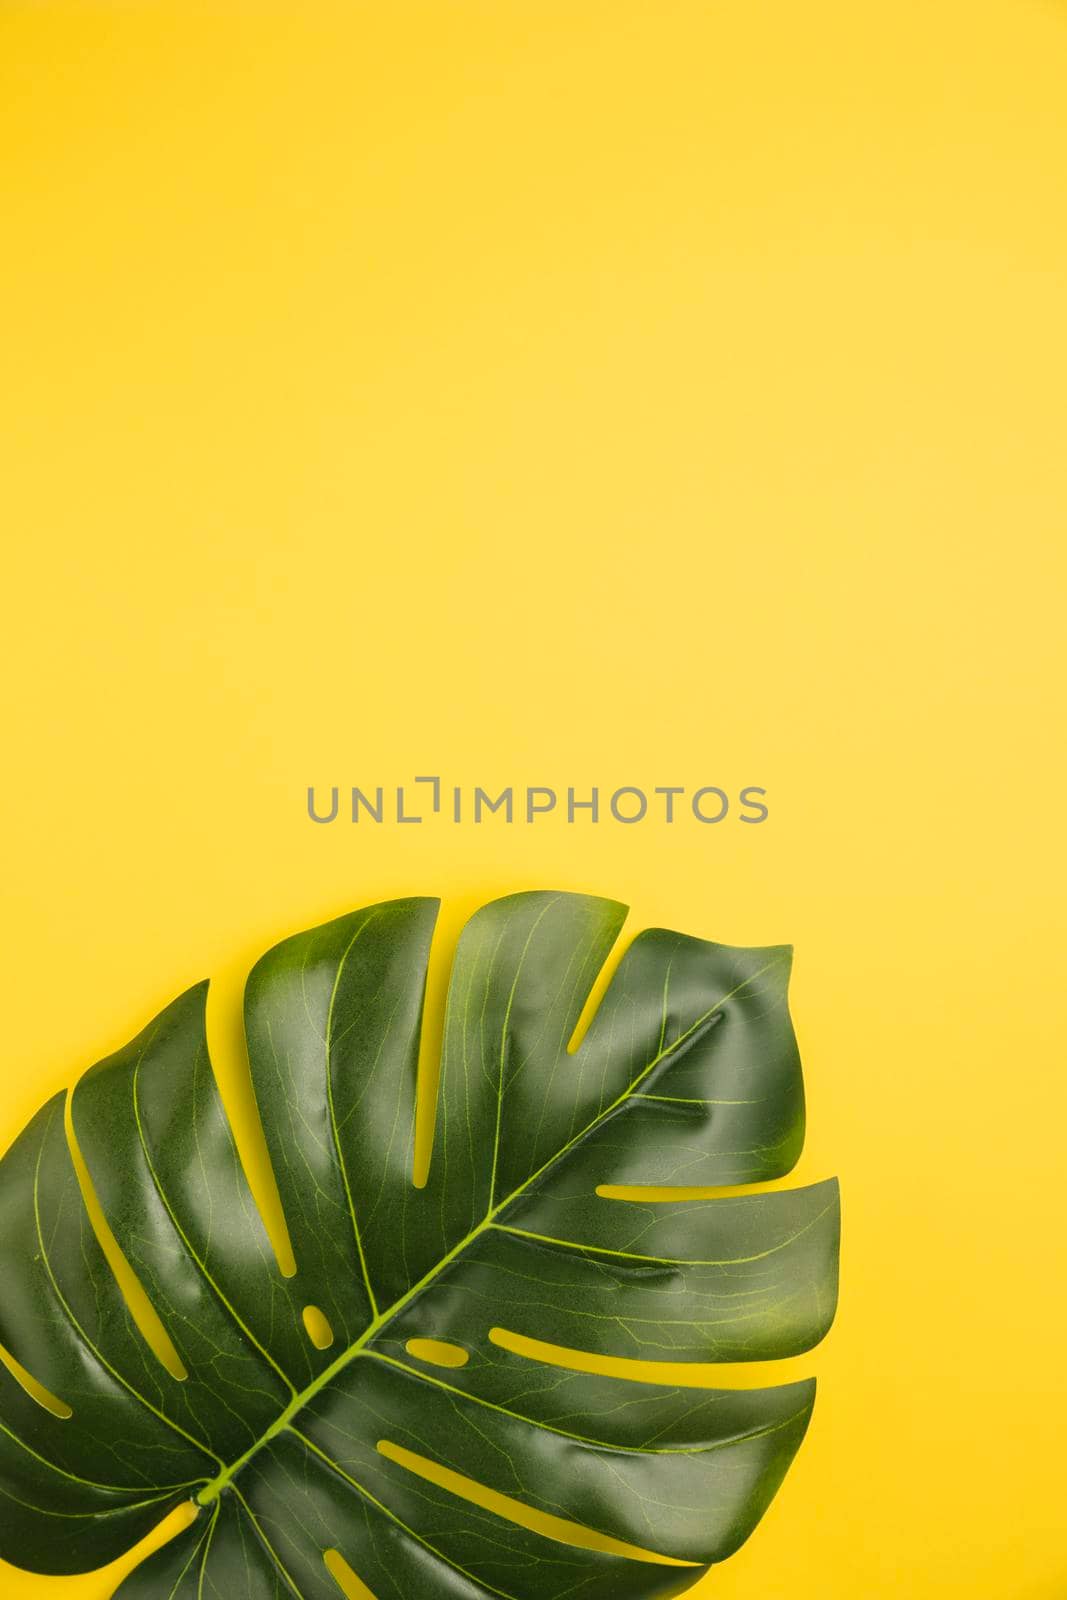 leaf palm tree orange background. High quality photo by Zahard